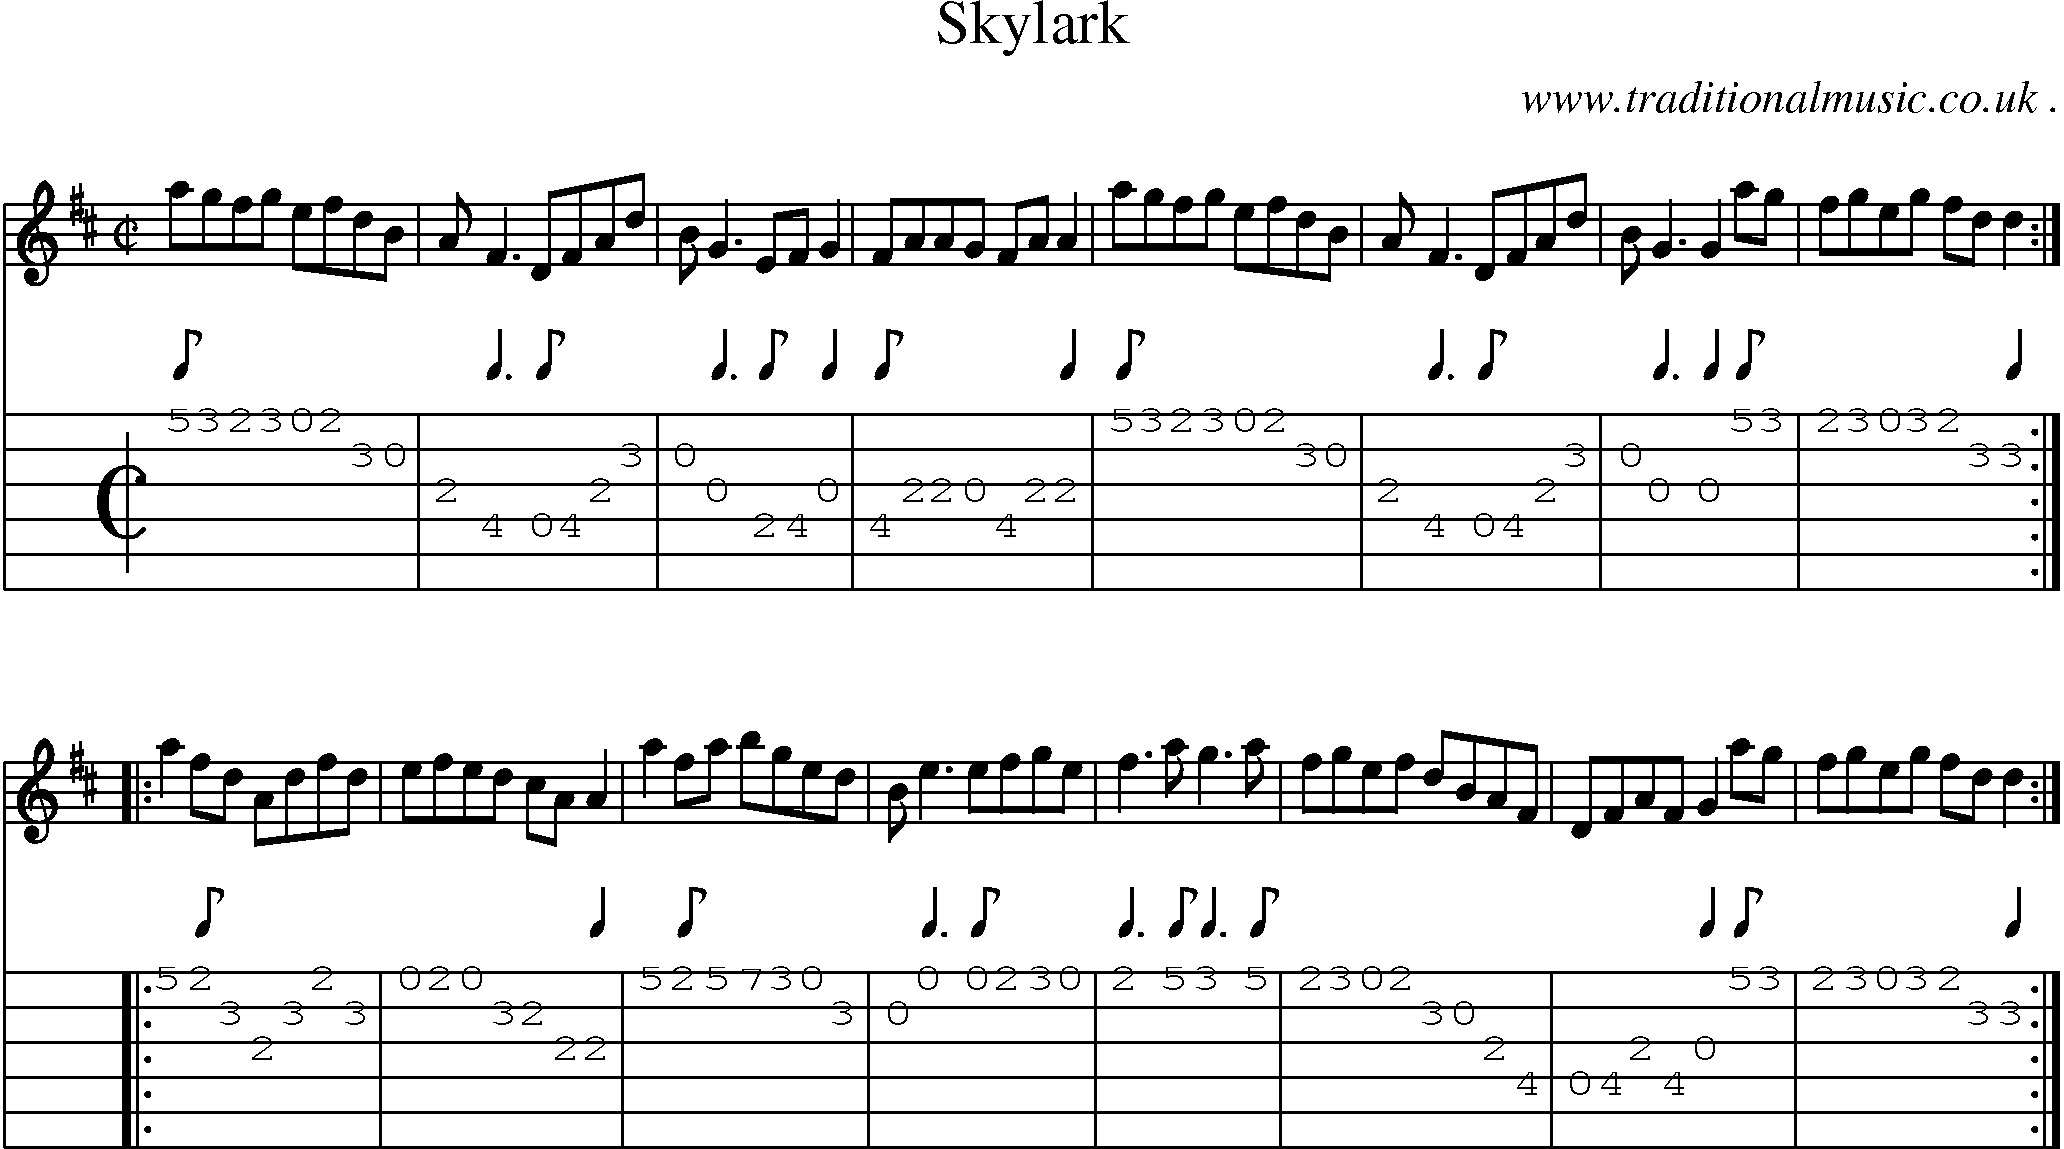 Sheet-Music and Guitar Tabs for Skylark